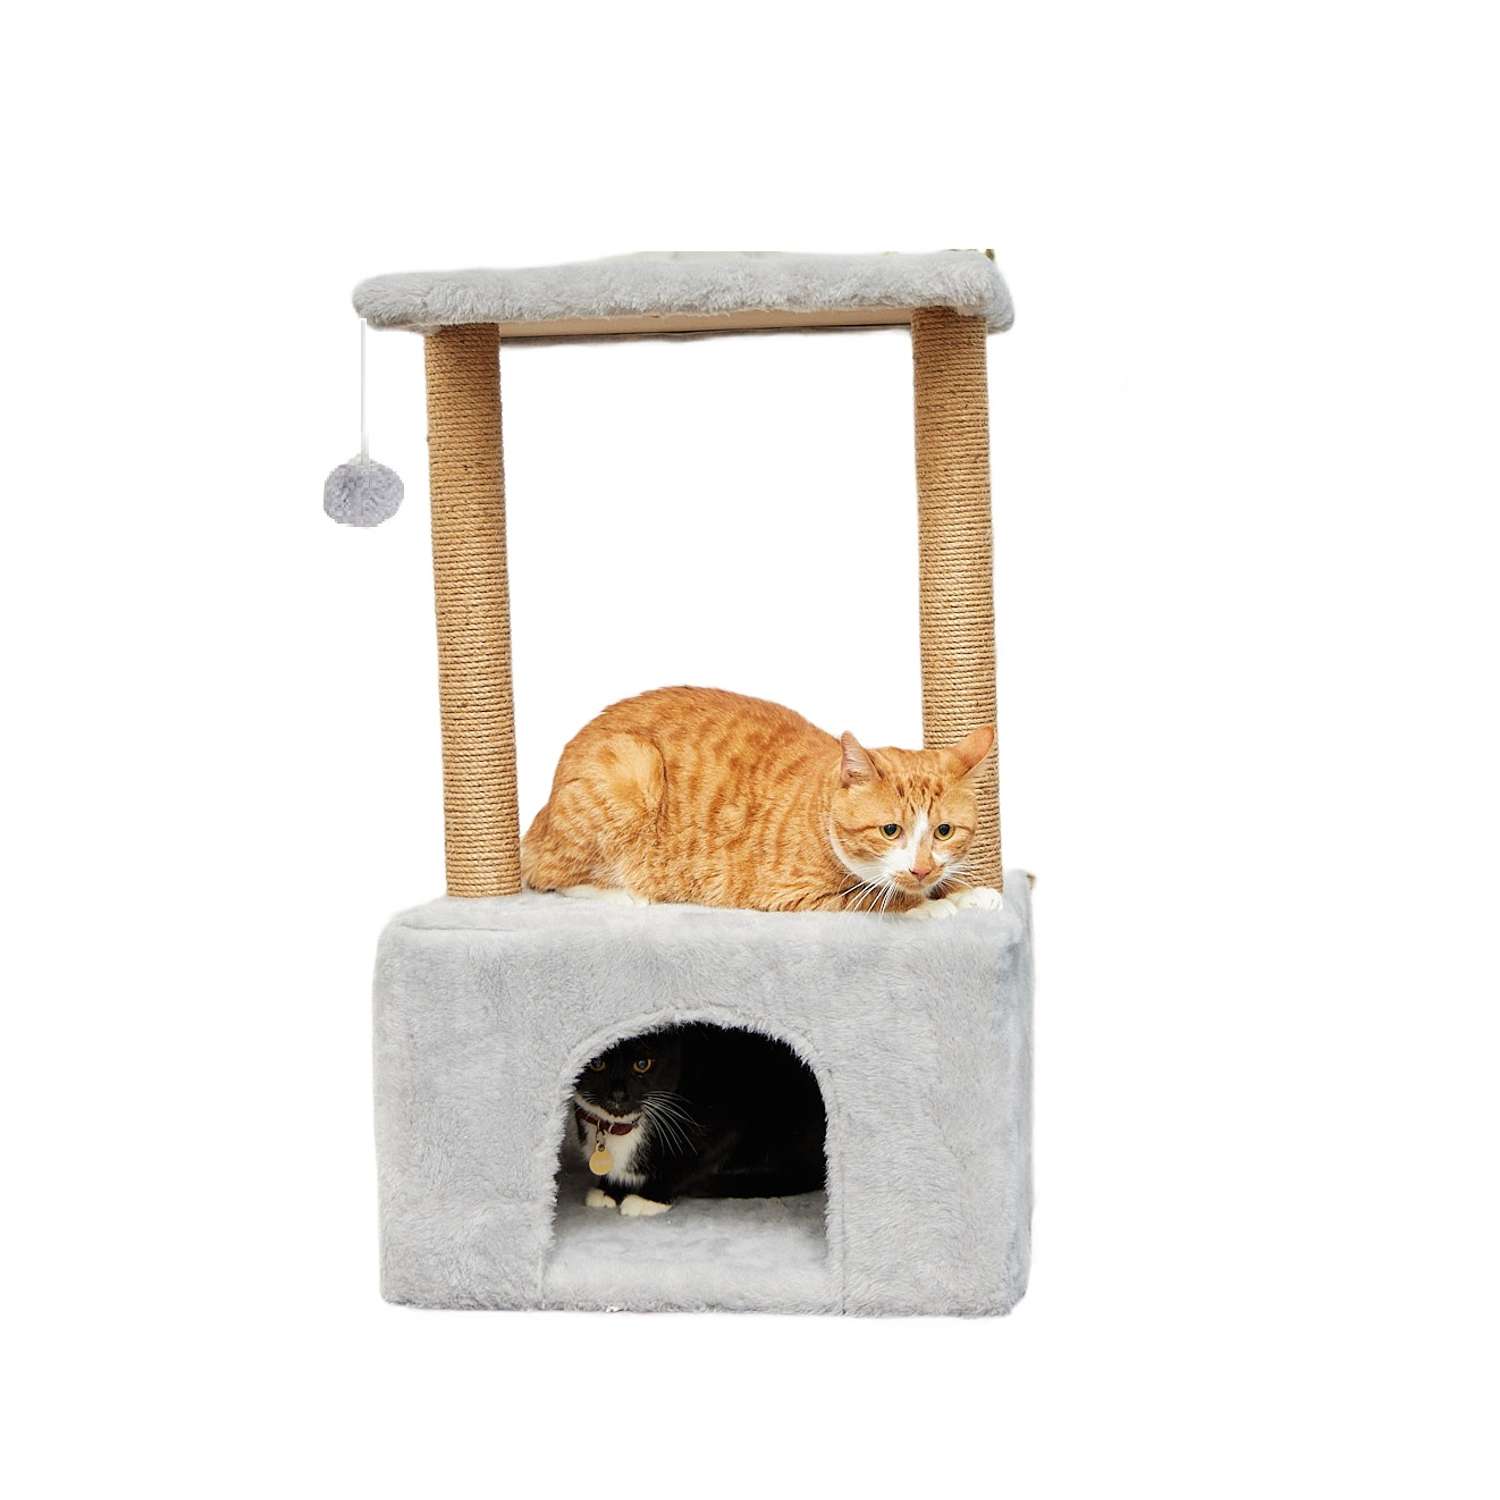 Когтеточки для кошек купить недорого | Цена на кошачью когтедралку в интернет-магазине Котомастер